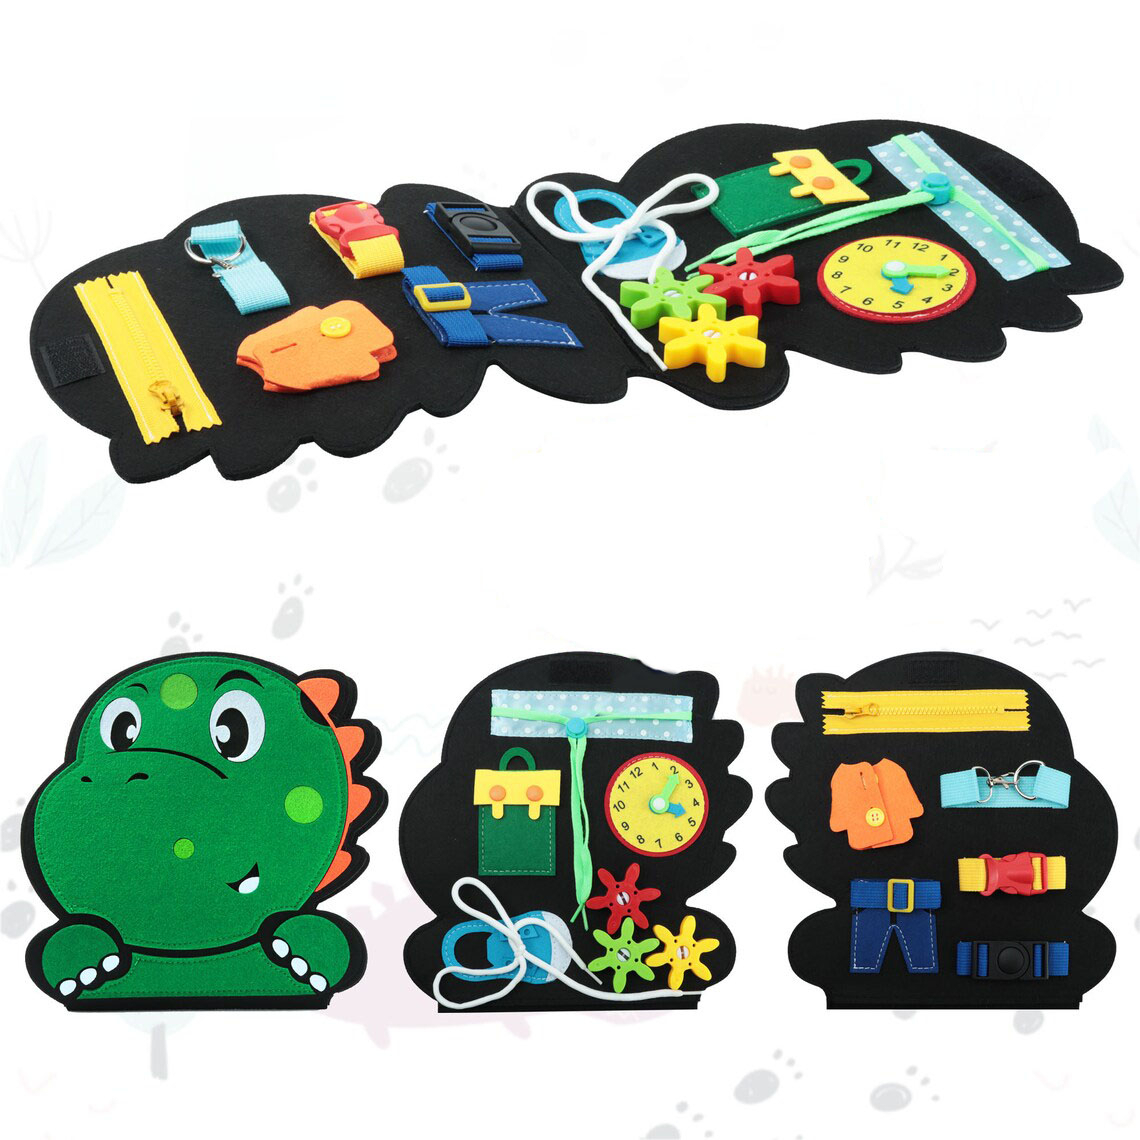 Busy board montessori en forme de dinosaure de couleur vert, avec l'ensemble des activités disponibles